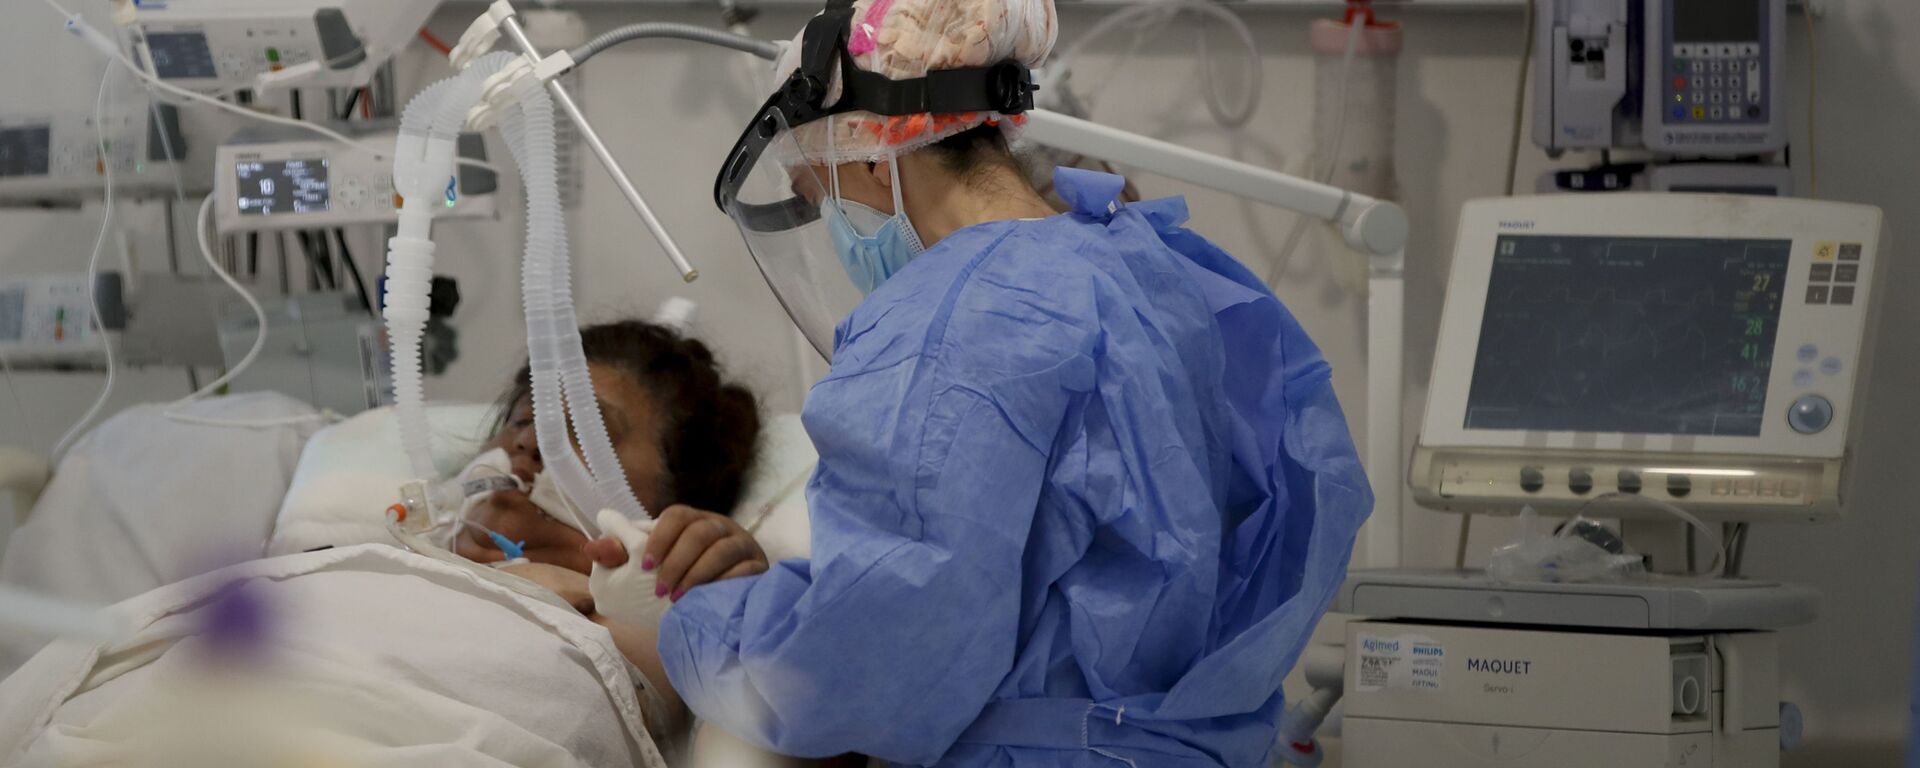 Una trabajadora de la salud atiende a un paciente en una unidad de cuidados intensivos designada para personas infectadas con coronavirus en un hospital en Buenos Aires (Argentina) - Sputnik Mundo, 1920, 14.04.2021